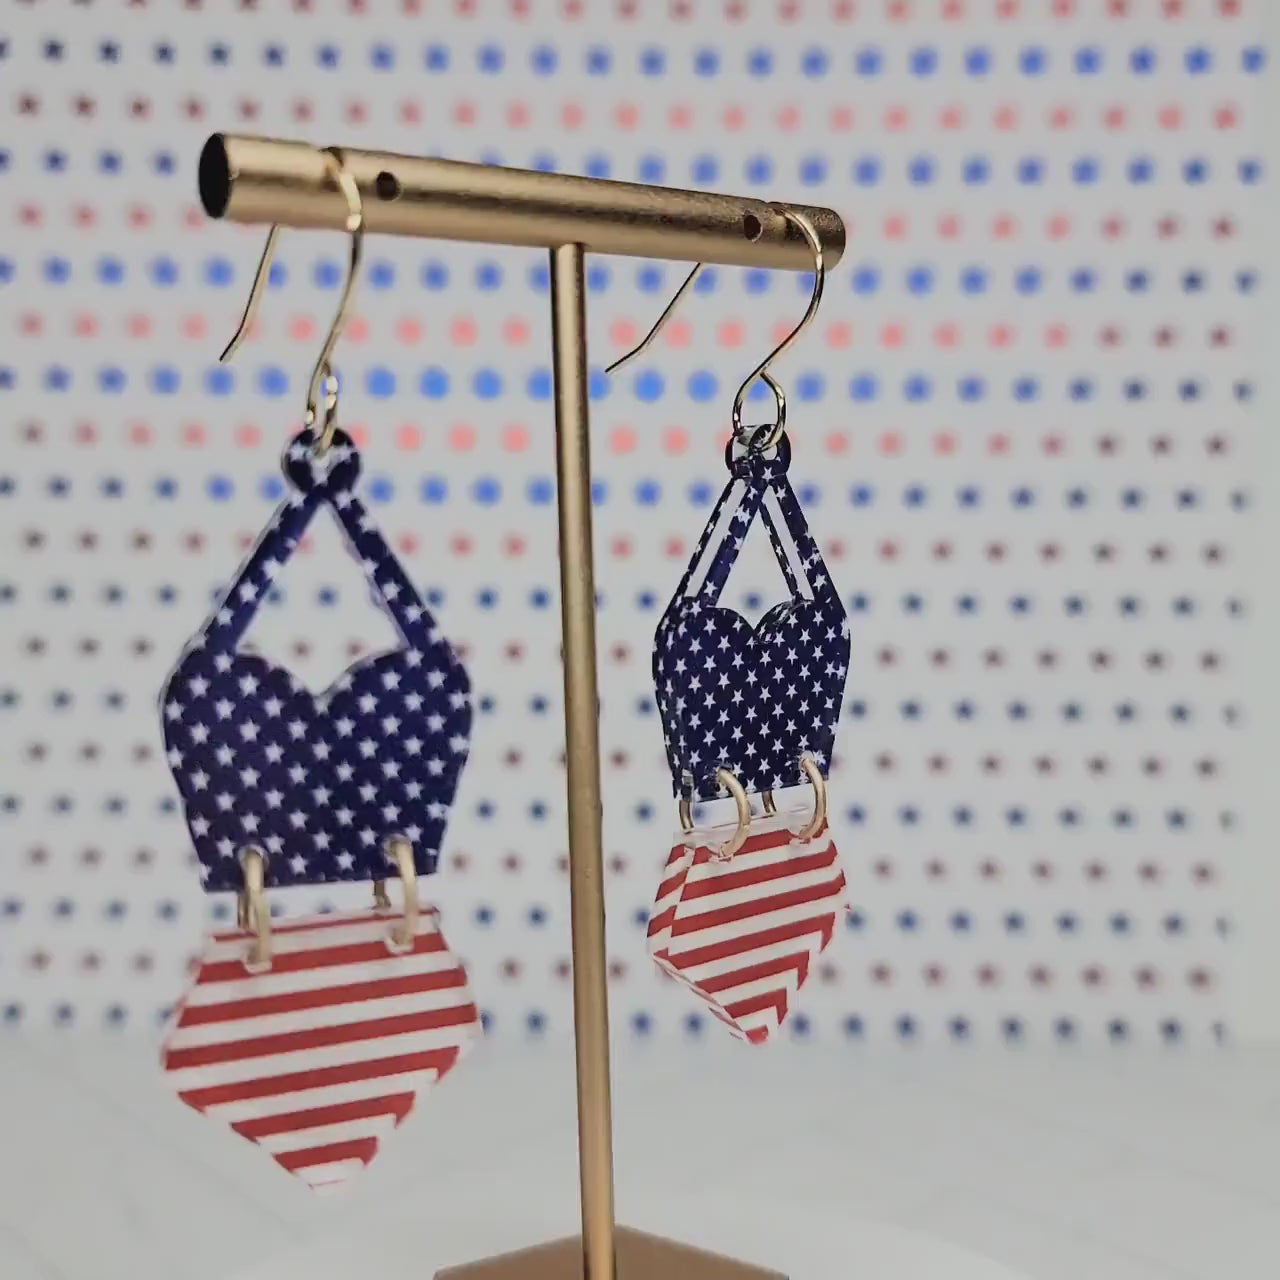 Patriotic Bathing Suit Earrings – Krafts By Kassy